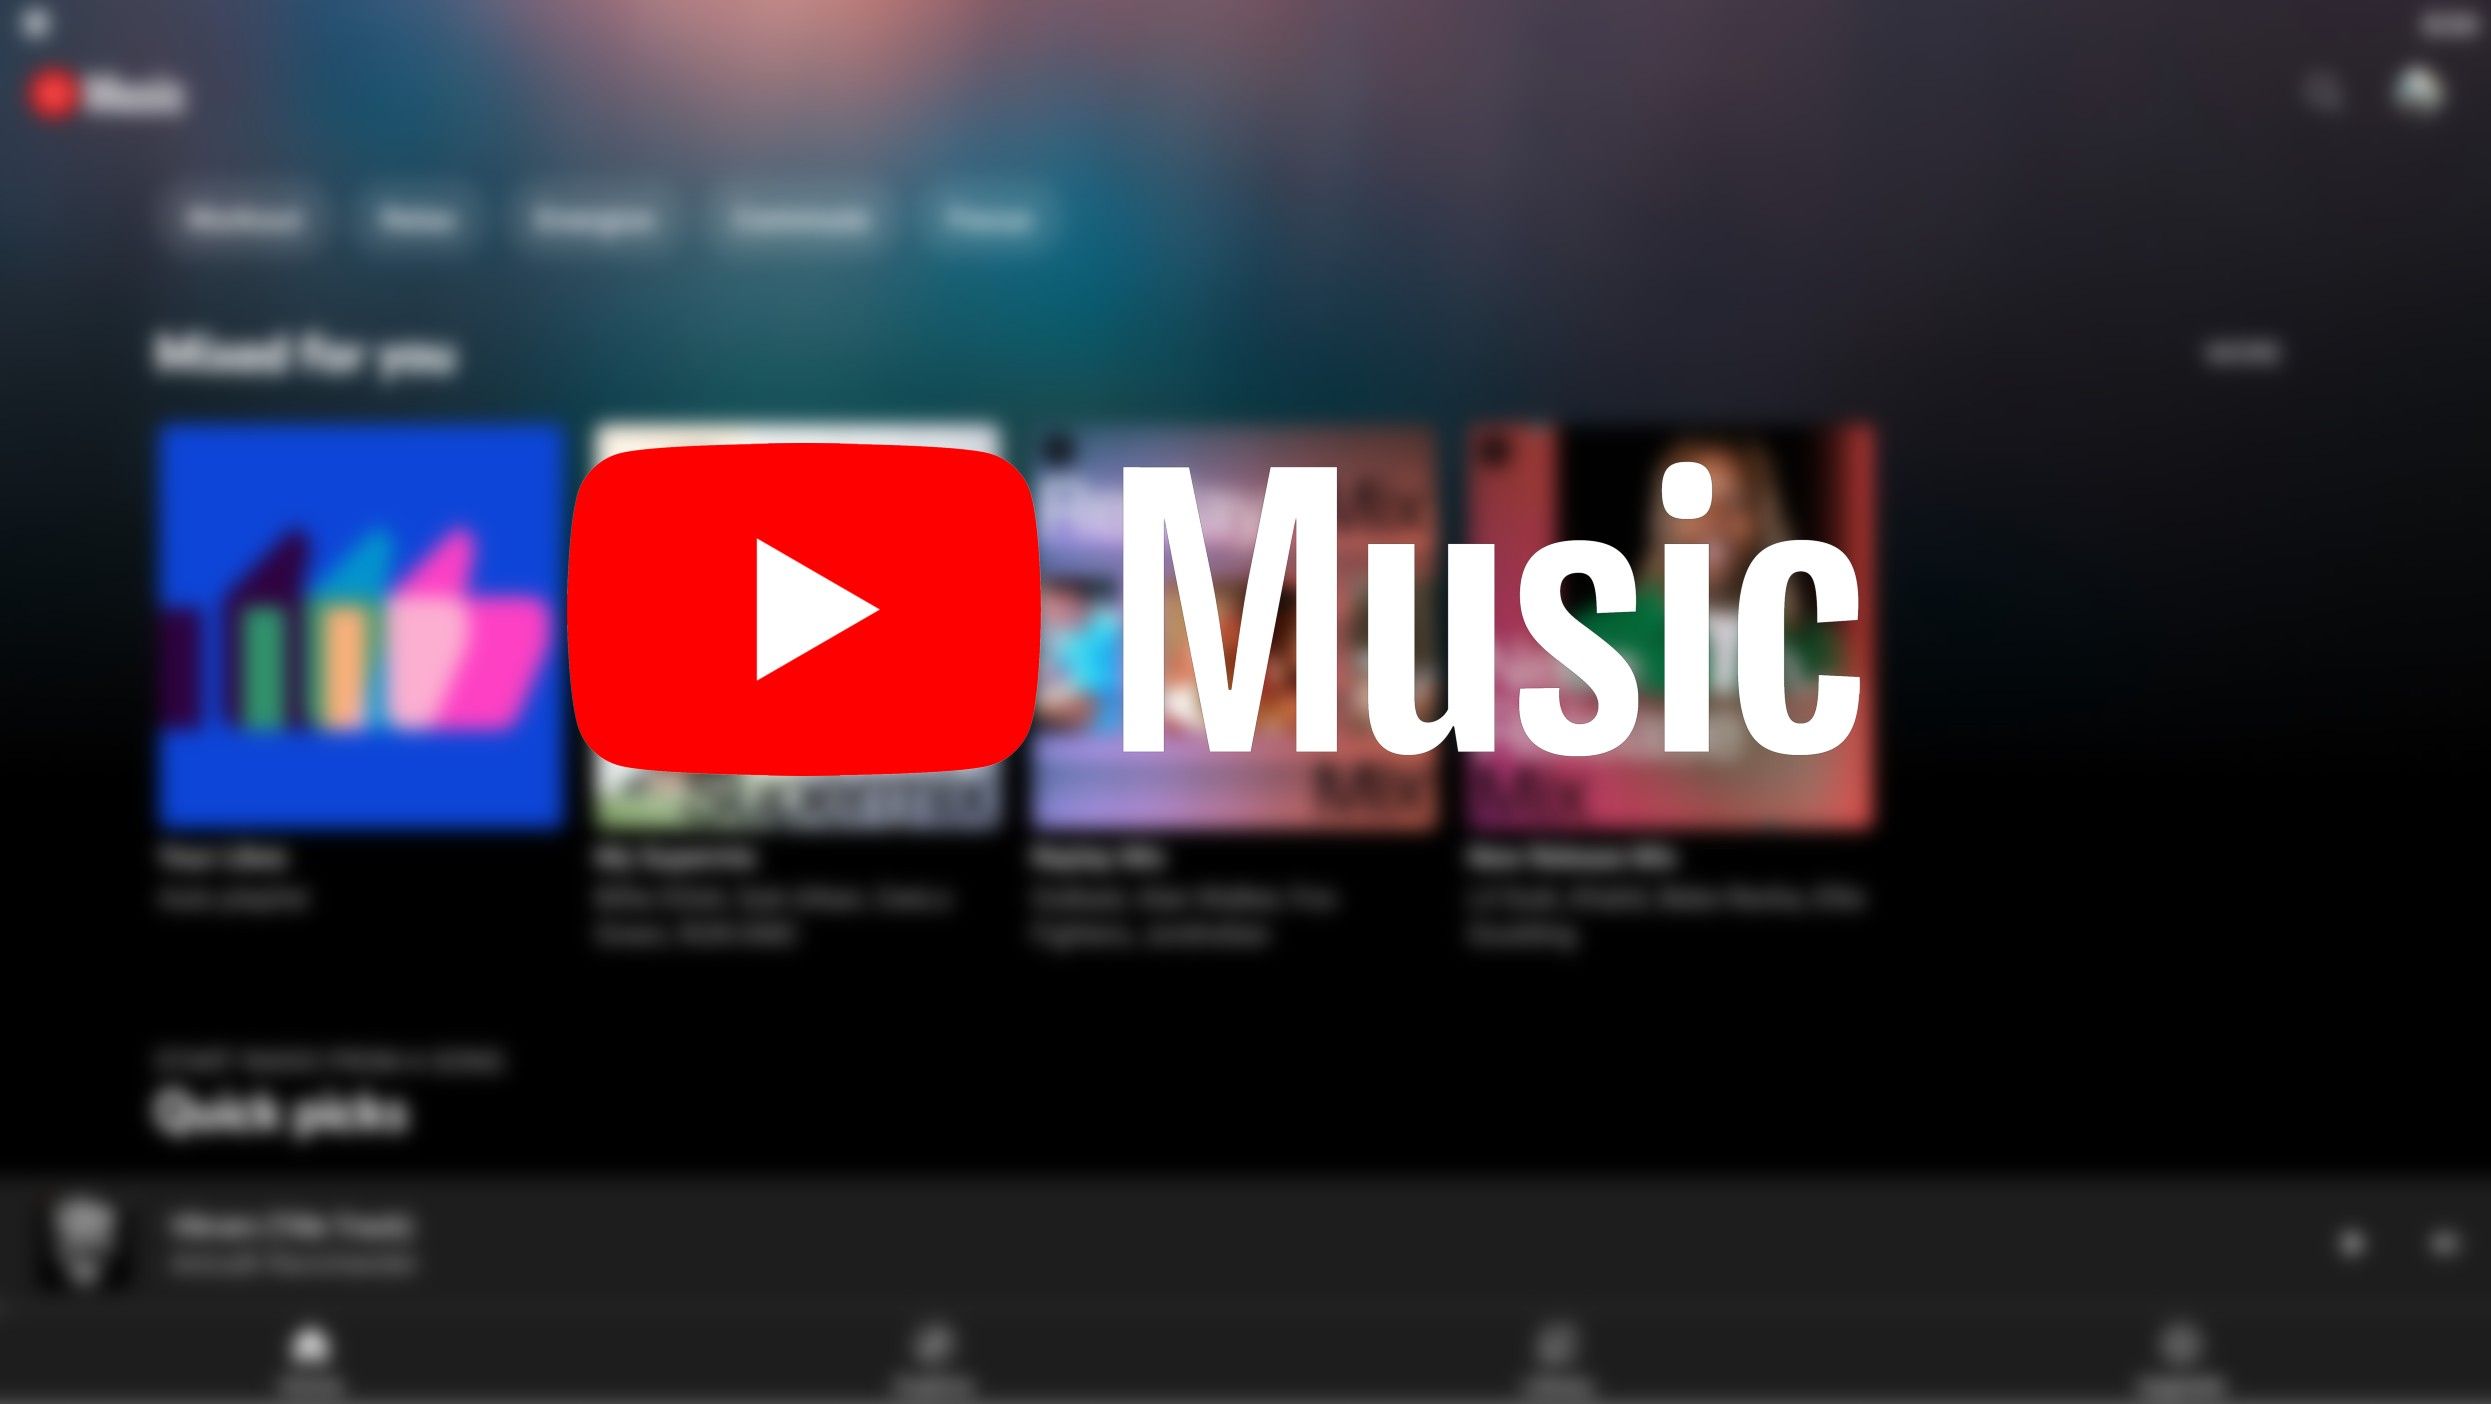 O logotipo do YouTube Music contra uma imagem desfocada do app YouTube